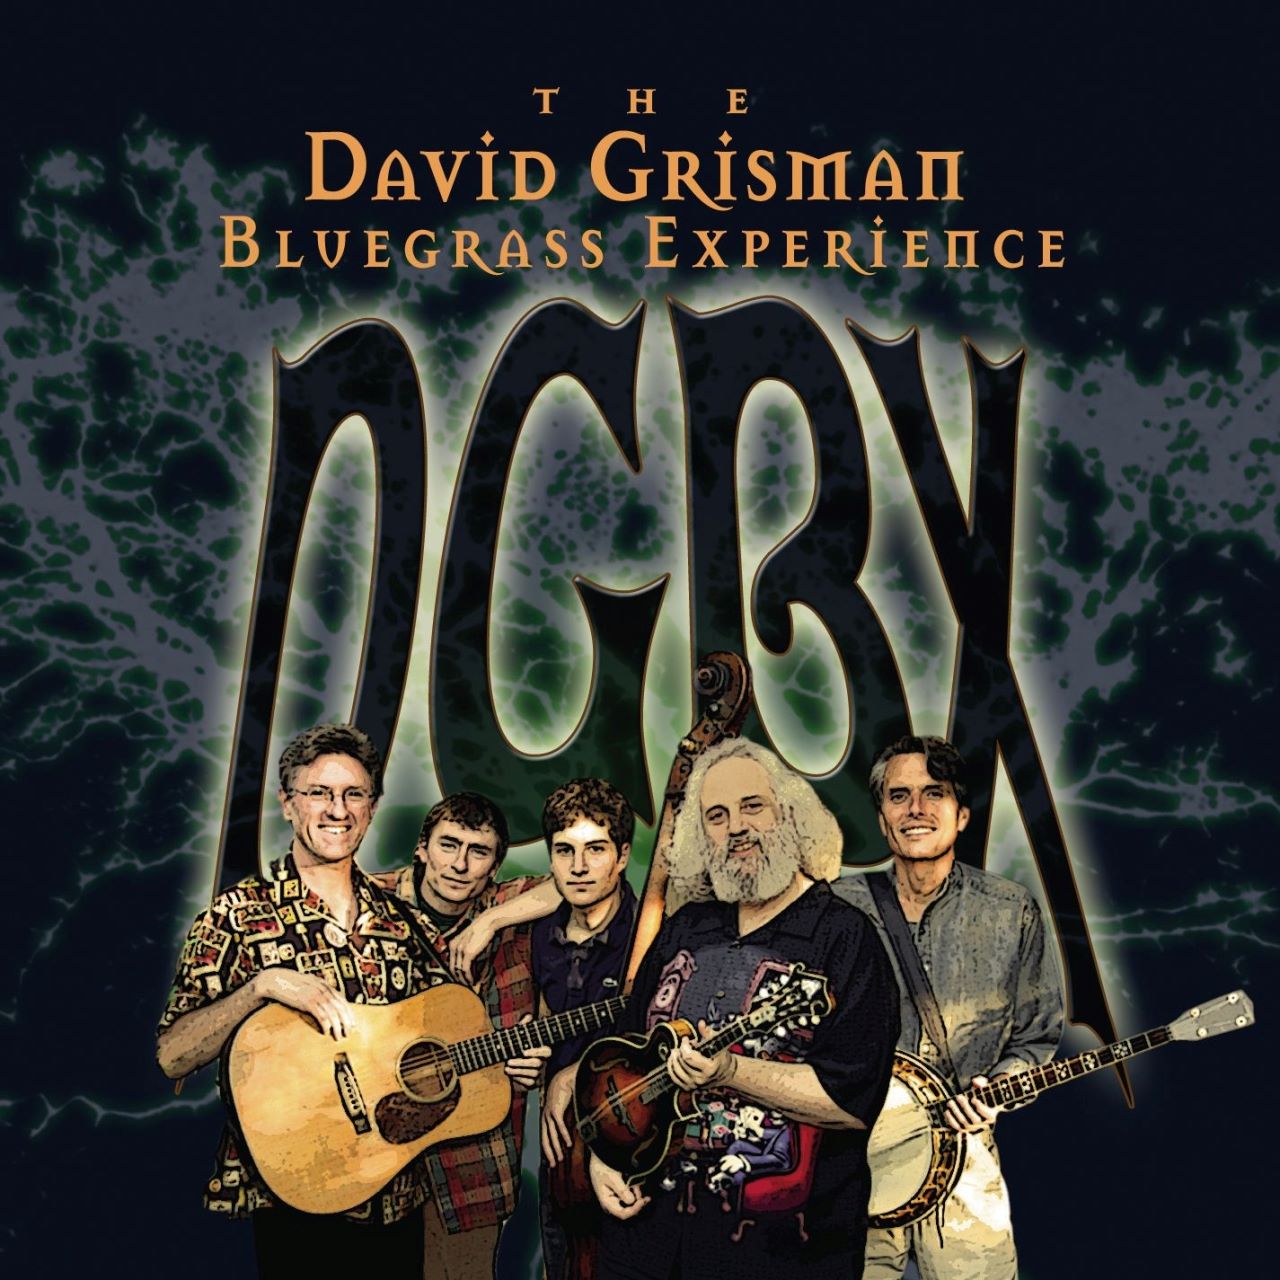 David Grisman Bluegrass Experience - DGBX cover album